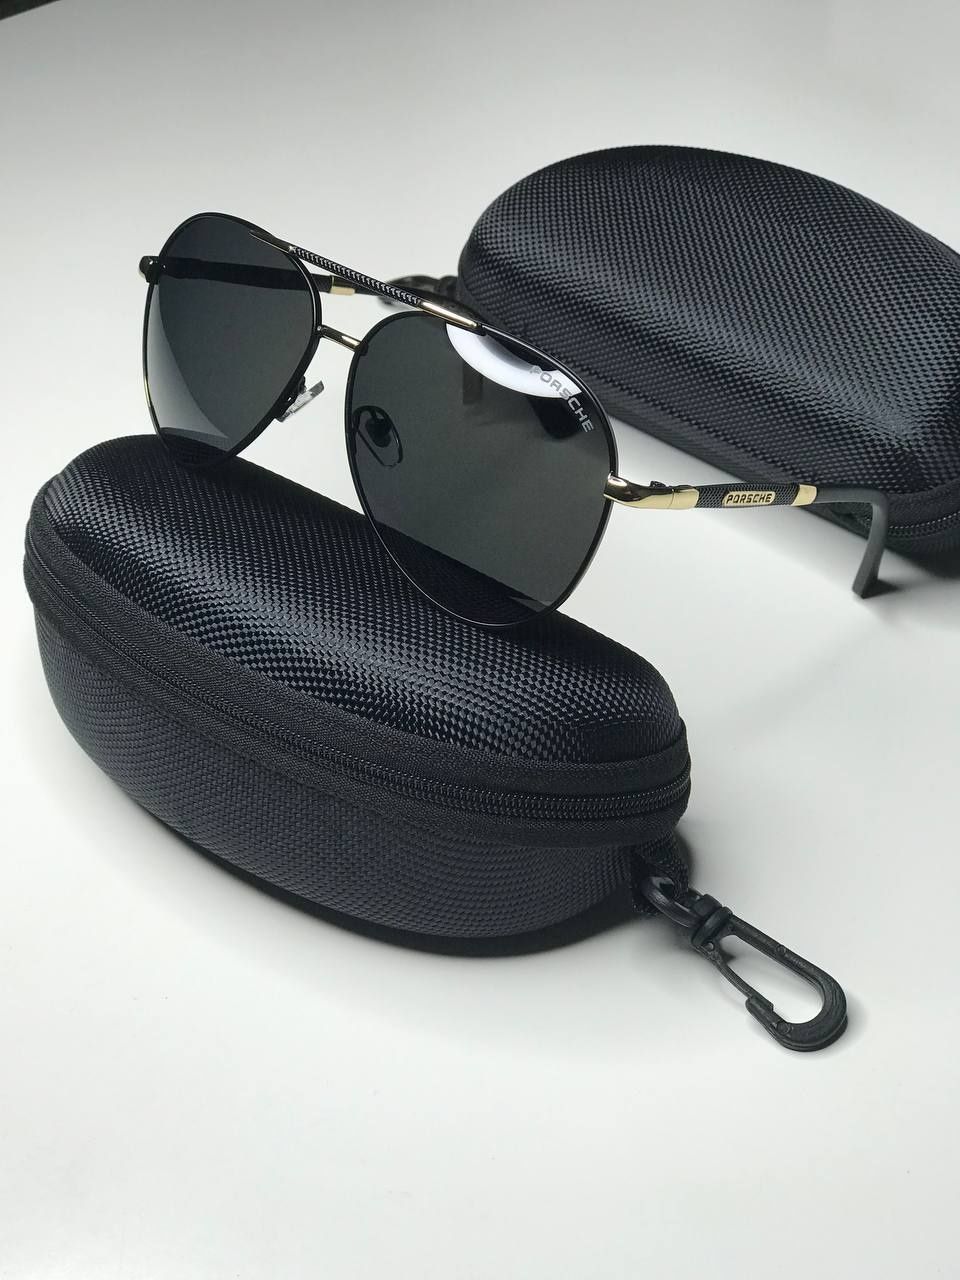 Солнцезащитные очки Porsche Авиаторы черные капельки поляризованные